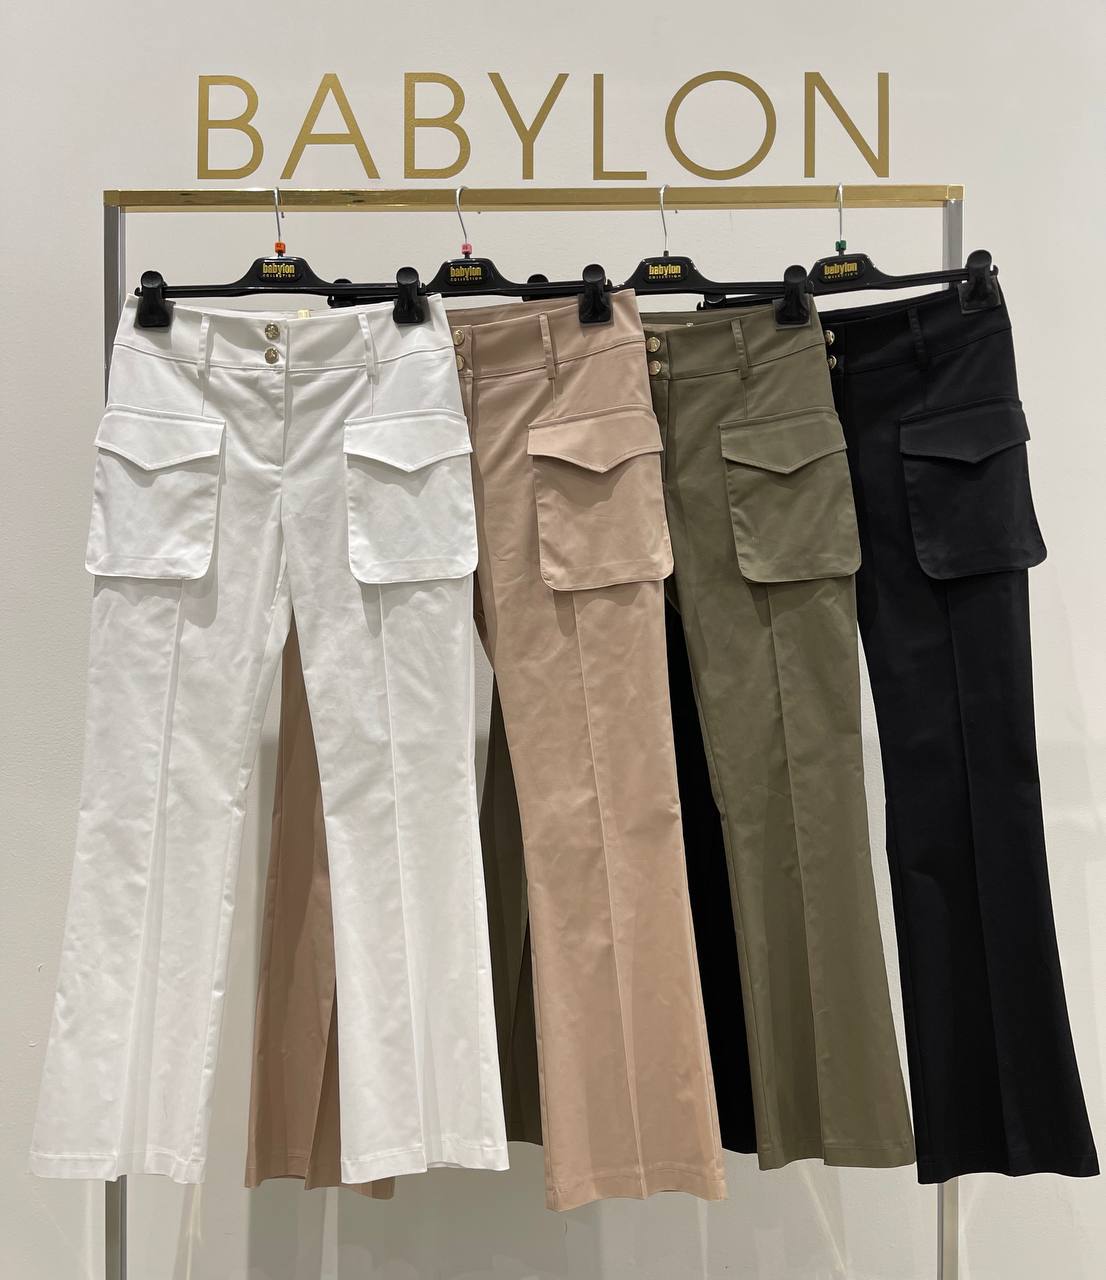 Итальянская одежда, бренд Babylon, арт. 73262235